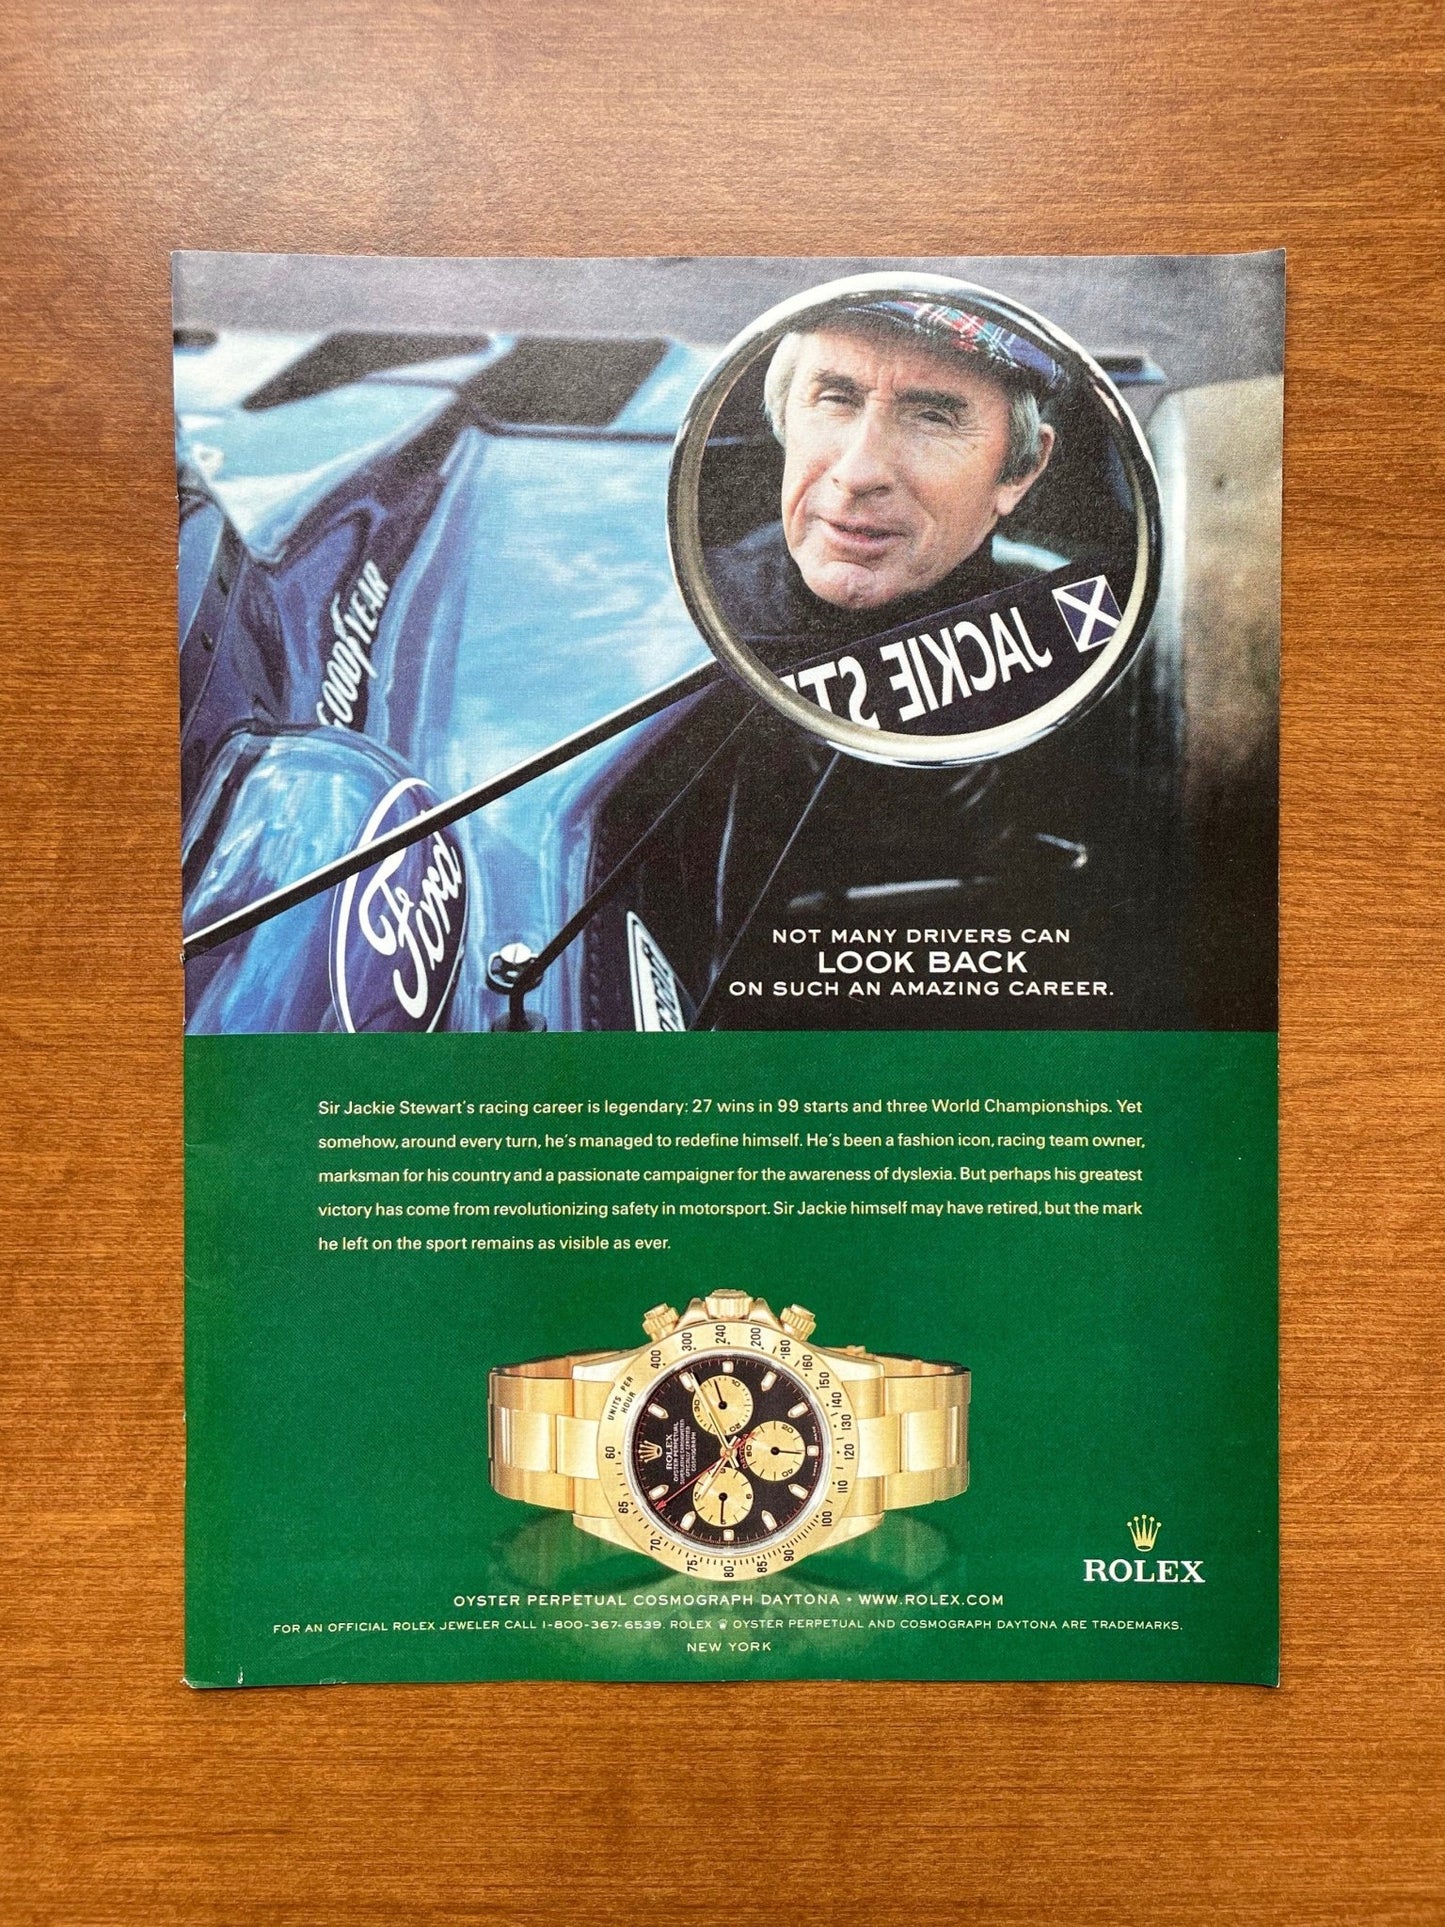 2005 Rolex Daytona Ref. 116528 feat. Sir Jackie Stewart Advertisement